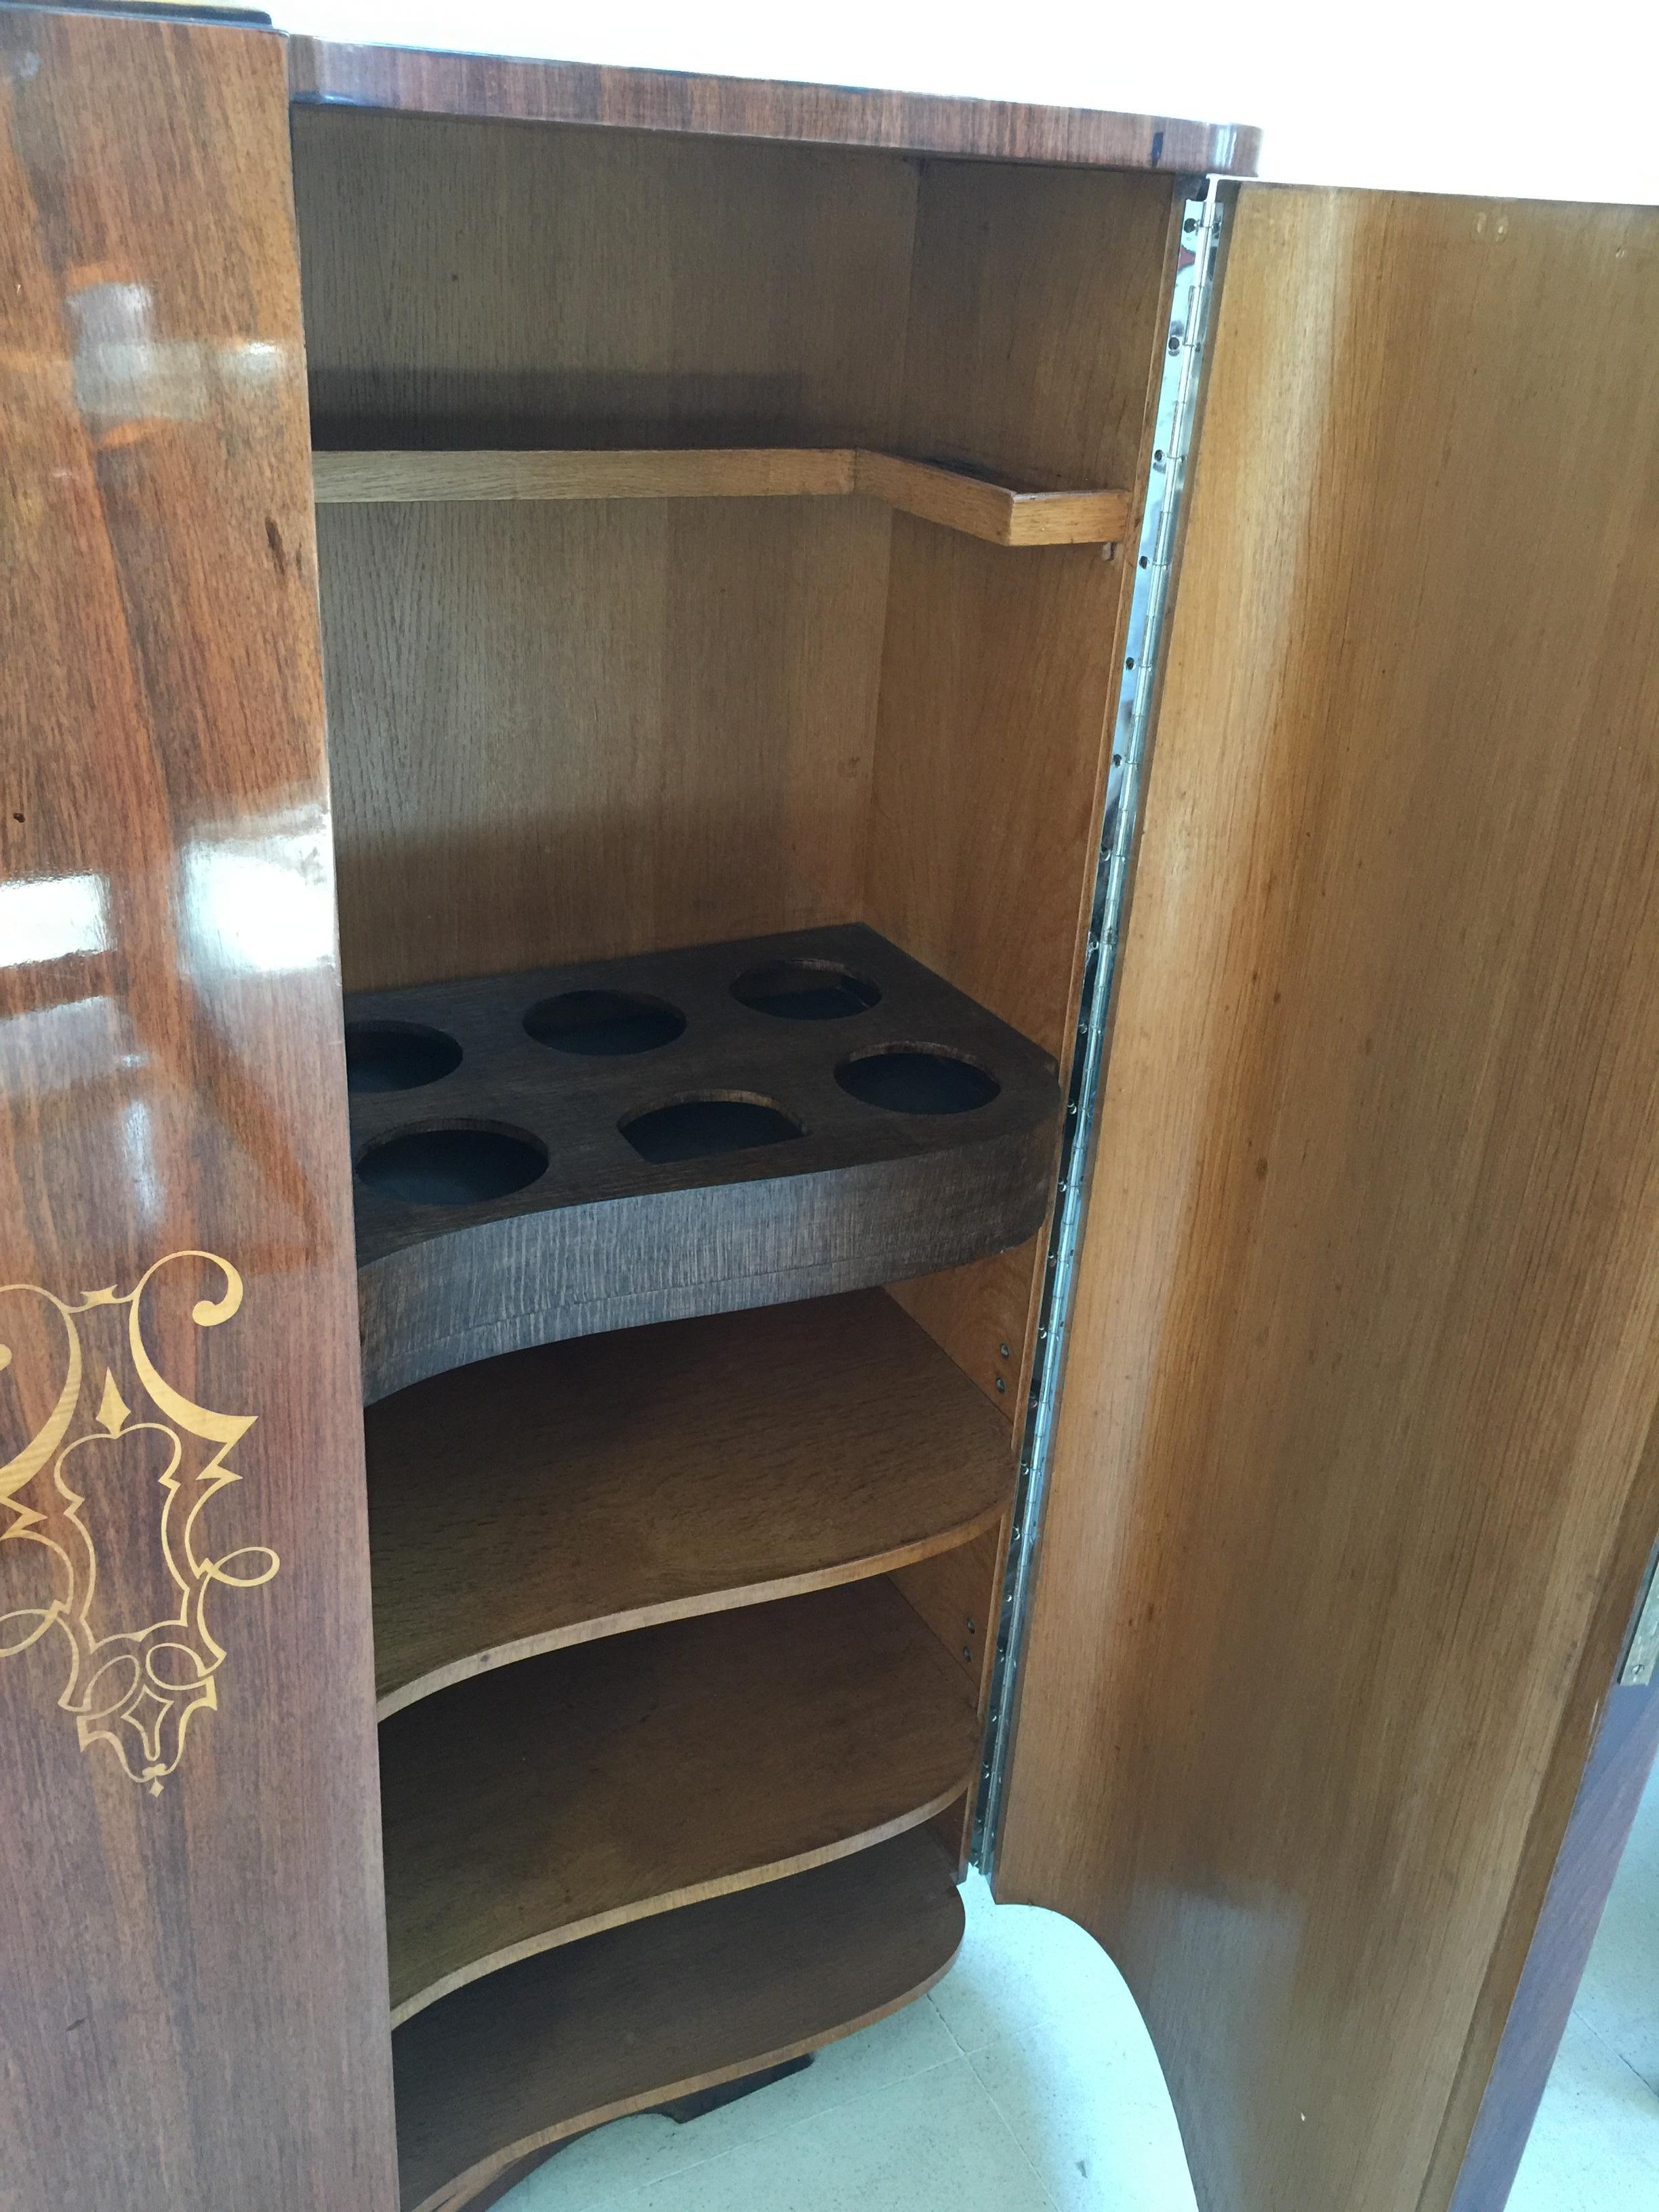 Bücherregal Art Deco

Jahr: 1930
Land: Französisch
Holz 
Oberfläche: Polyurethan-Lack
Es ist ein elegantes und anspruchsvolles Bücherregal.
Sie wollen in den goldenen Jahren leben, ist dies das Bücherregal, dass Ihr Projekt braucht.
Seit 1982 haben